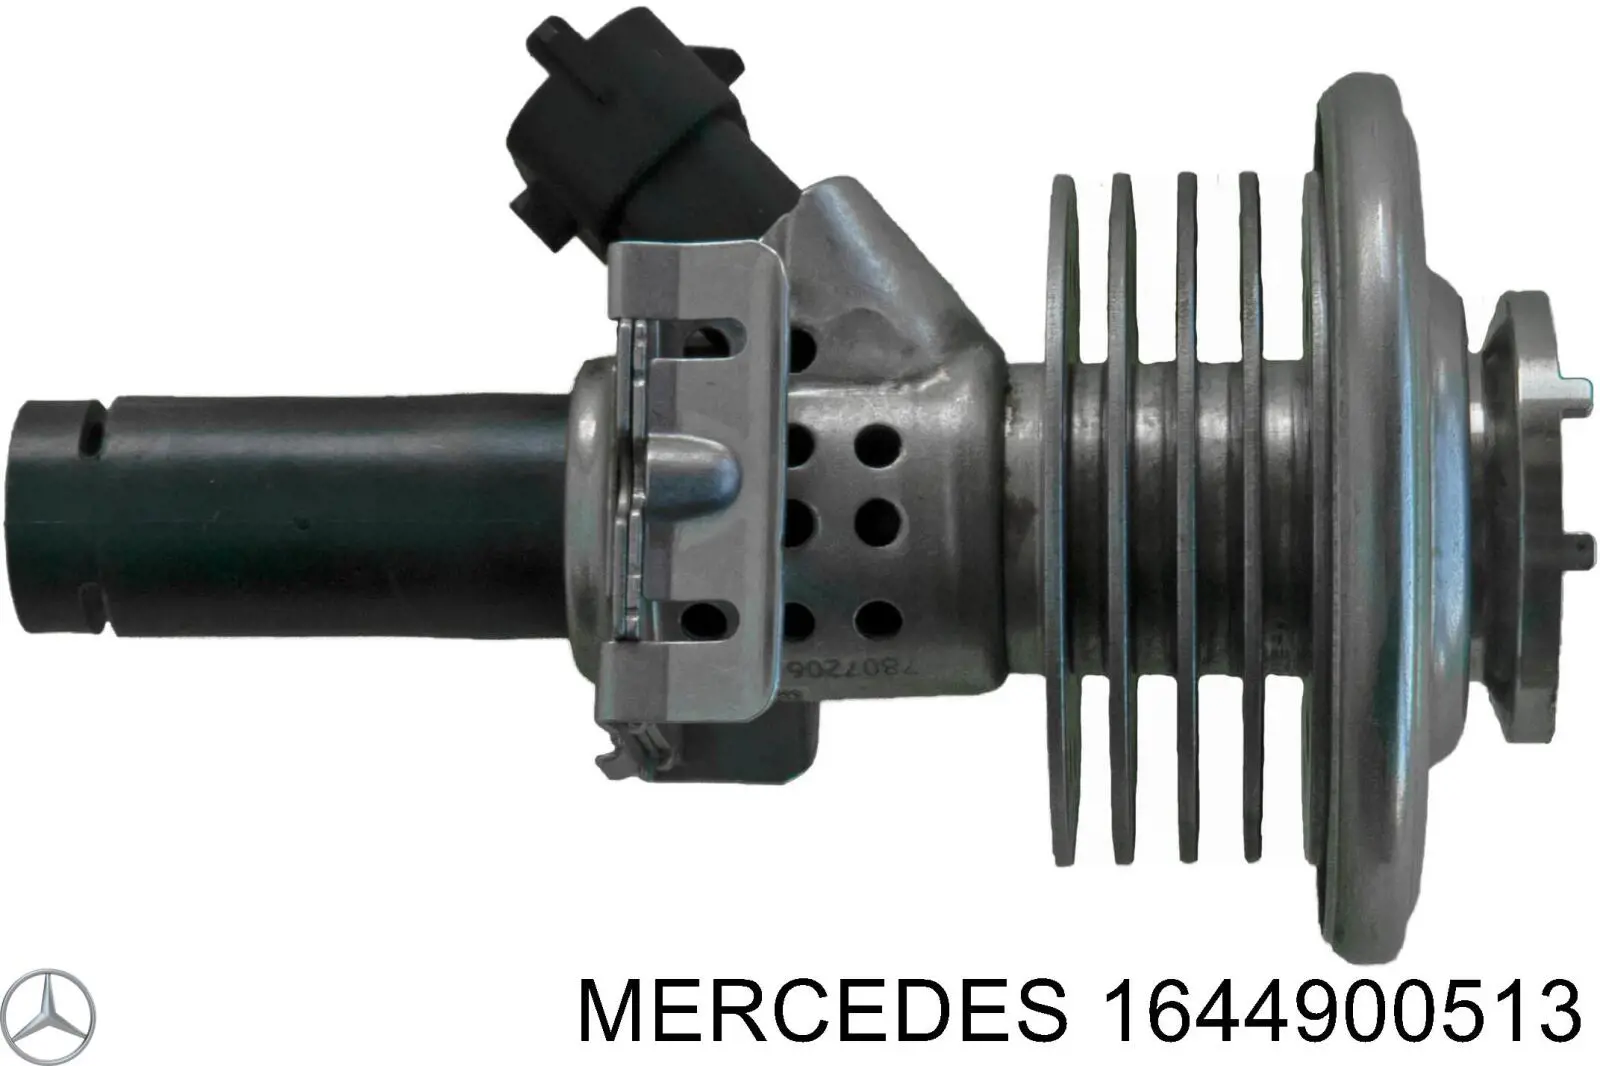 Injetor de injeção AD BLUE para Mercedes ML/GLE (W166)